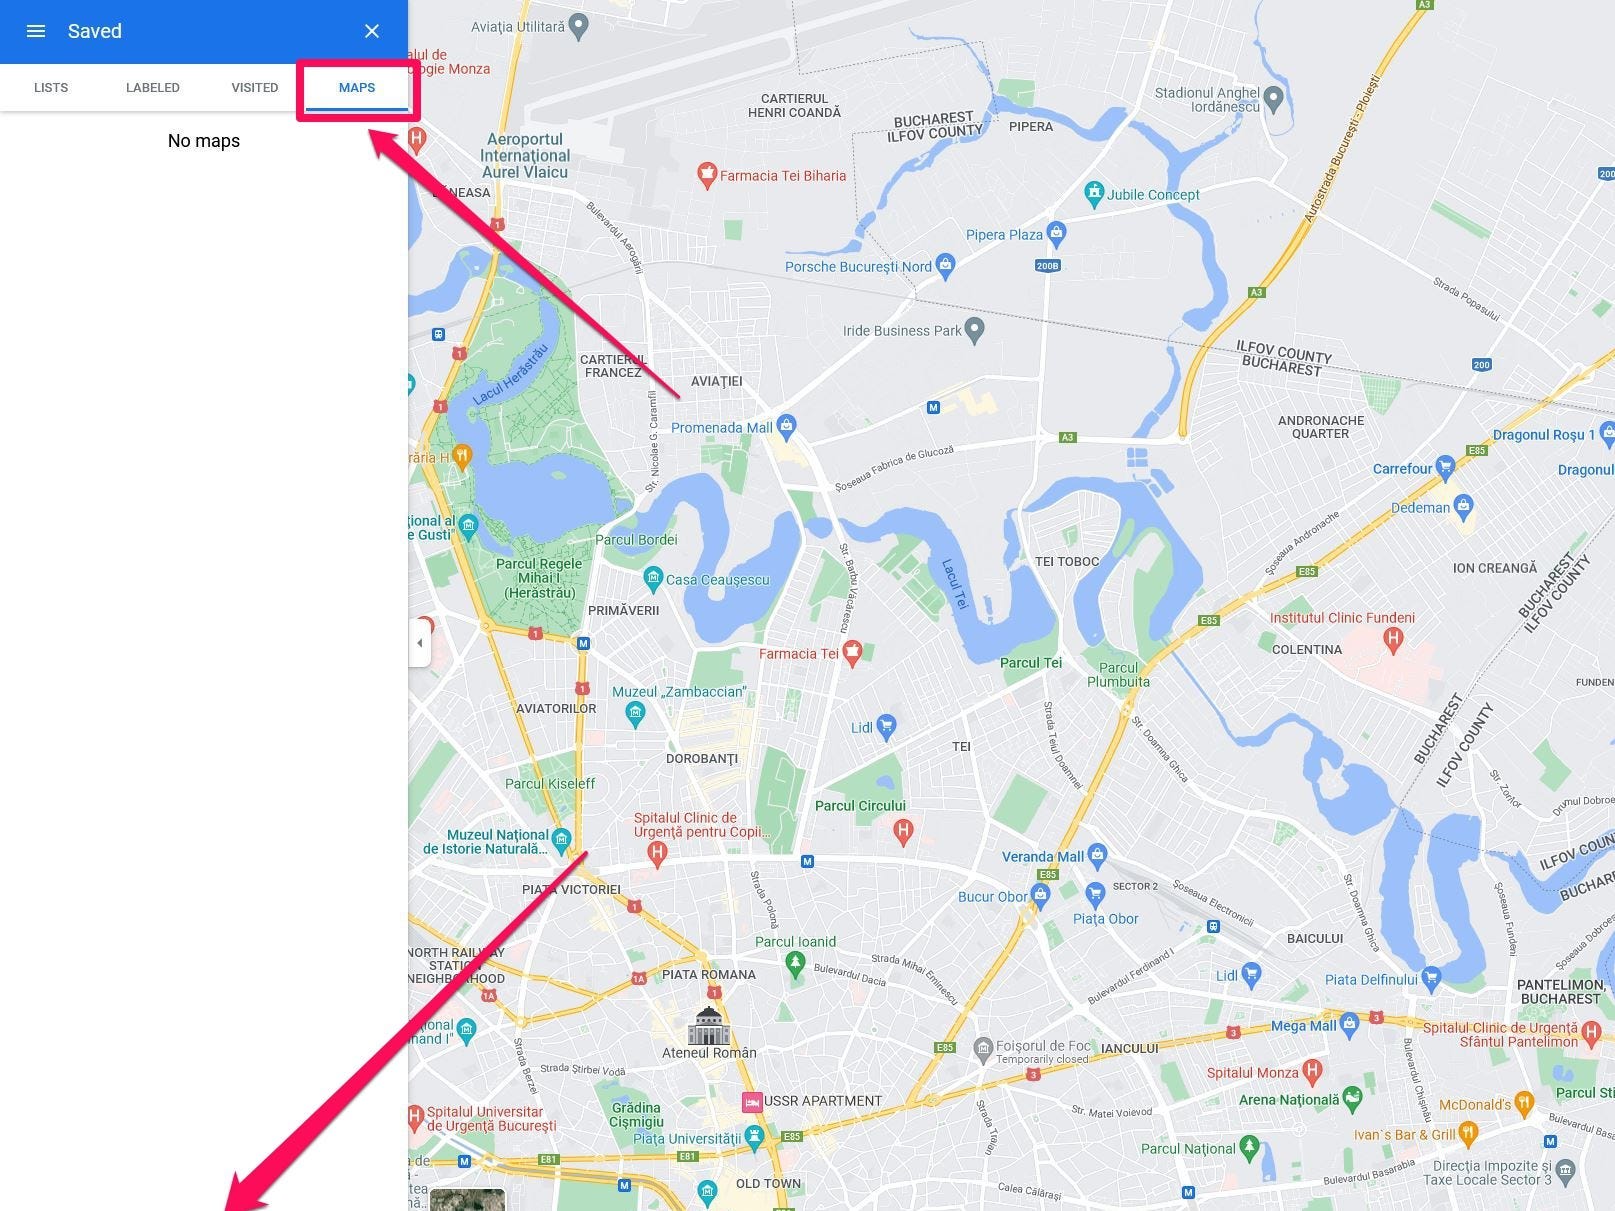 Menu "I tuoi luoghi" in Google Maps sul desktop, con l'opzione "Mappe" e "Crea mappa" evidenziata in un riquadro rosa acceso con le frecce che puntano su ciascuno di essi.